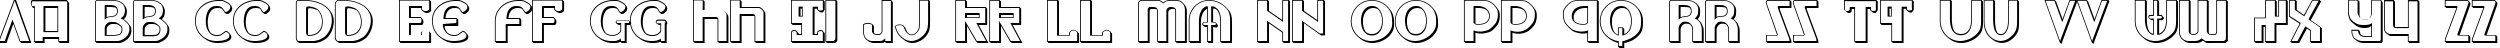 Пример написания английского алфавита шрифтом Lionheart Shadow